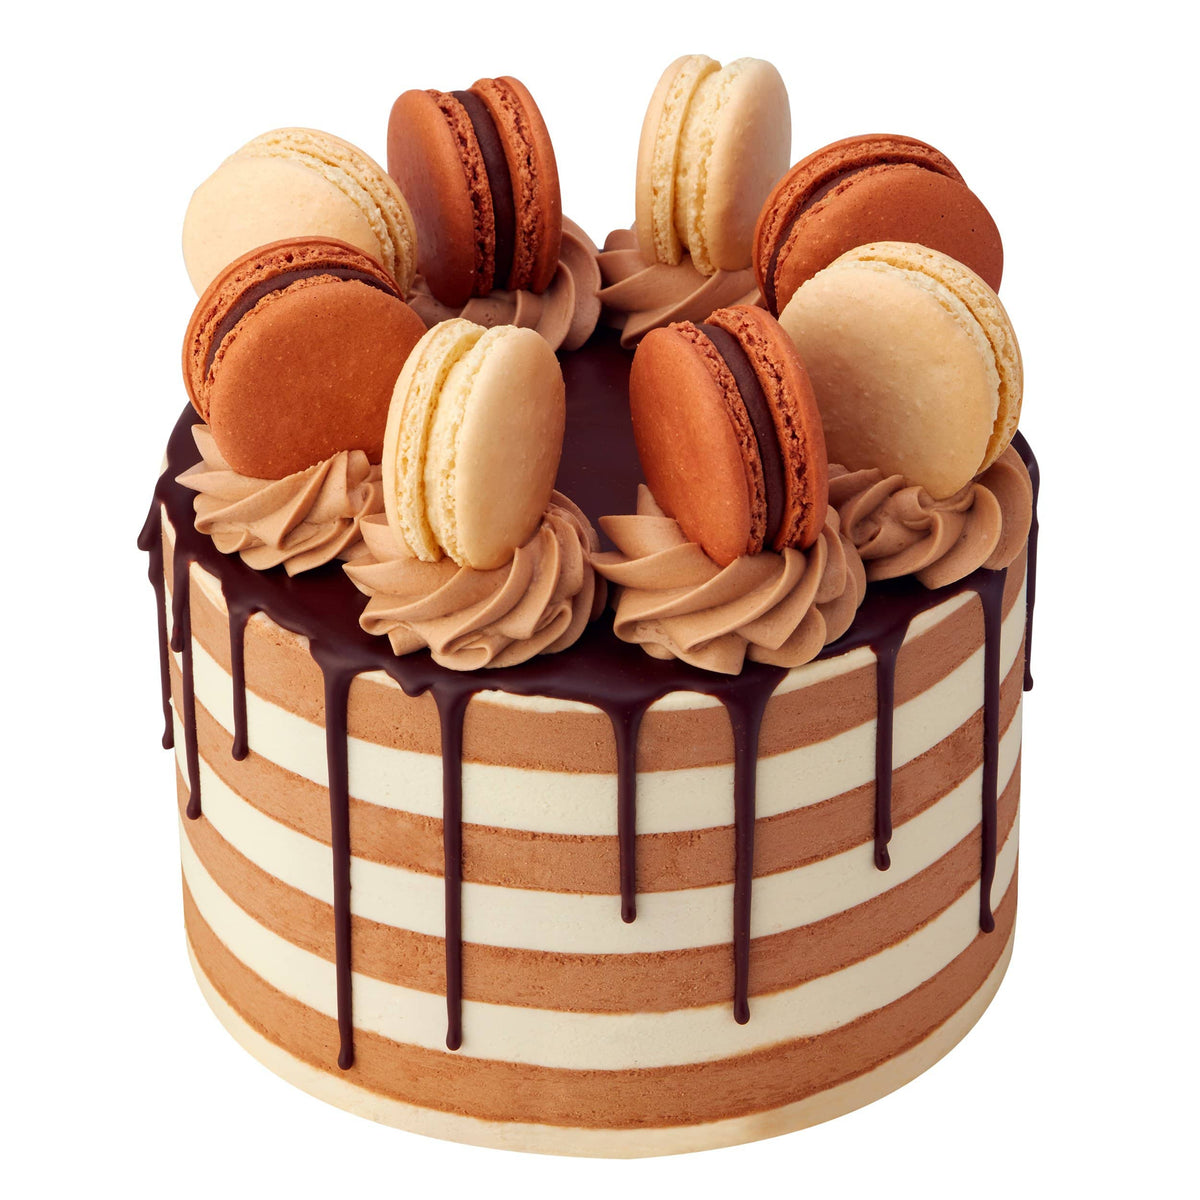 Favorite Fudge Birthday Cake Recipe | King Arthur Baking